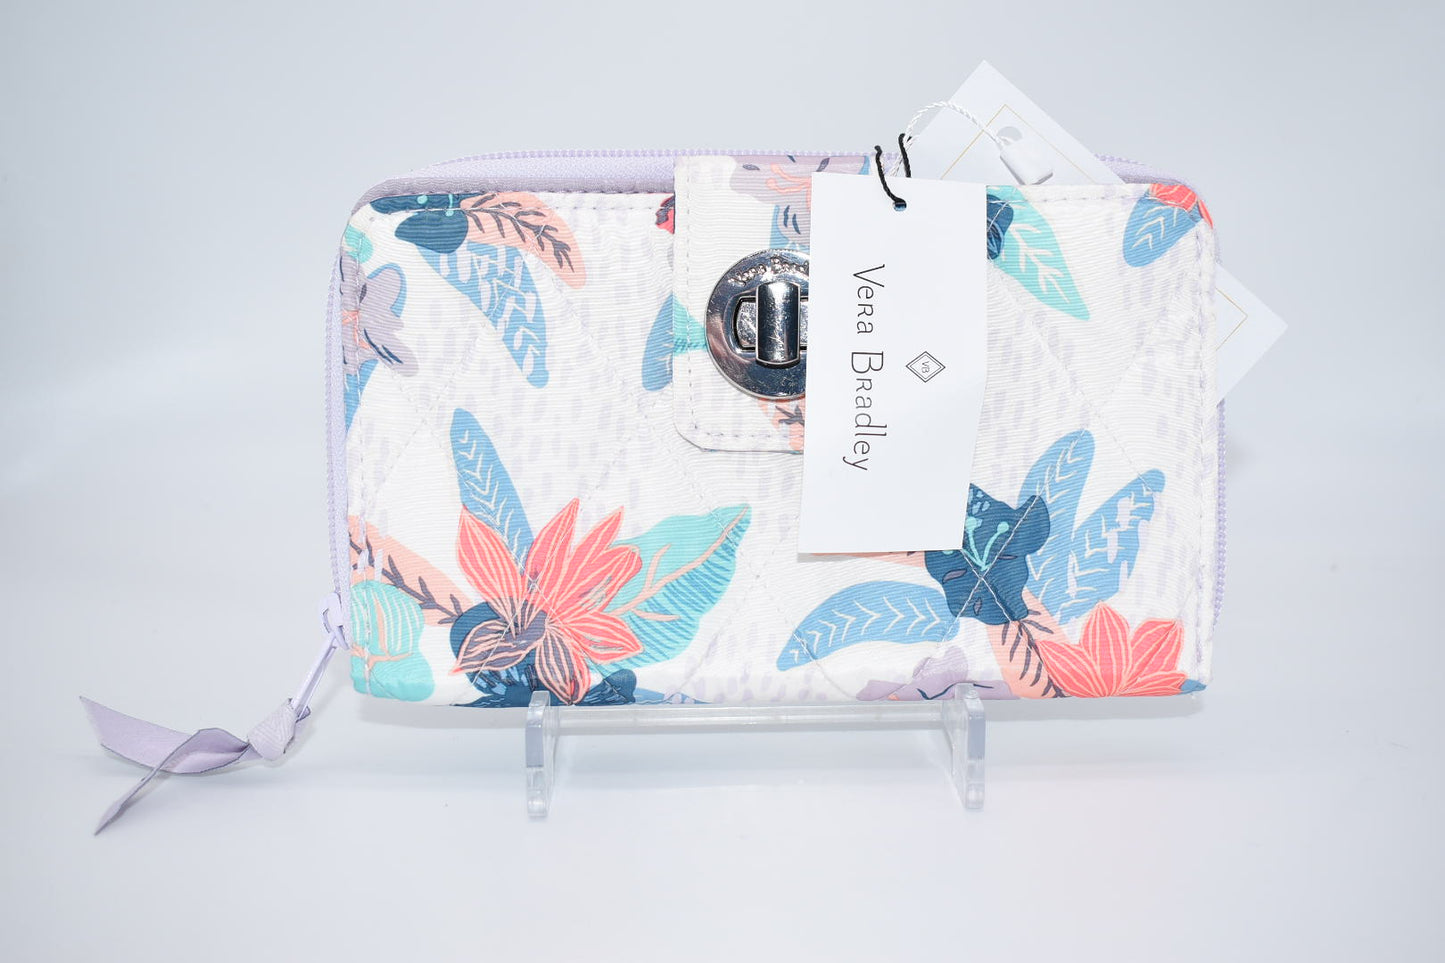 Vera Bradley Ultralight RFID Turnlock Wallet in Tropical Floral Pattern